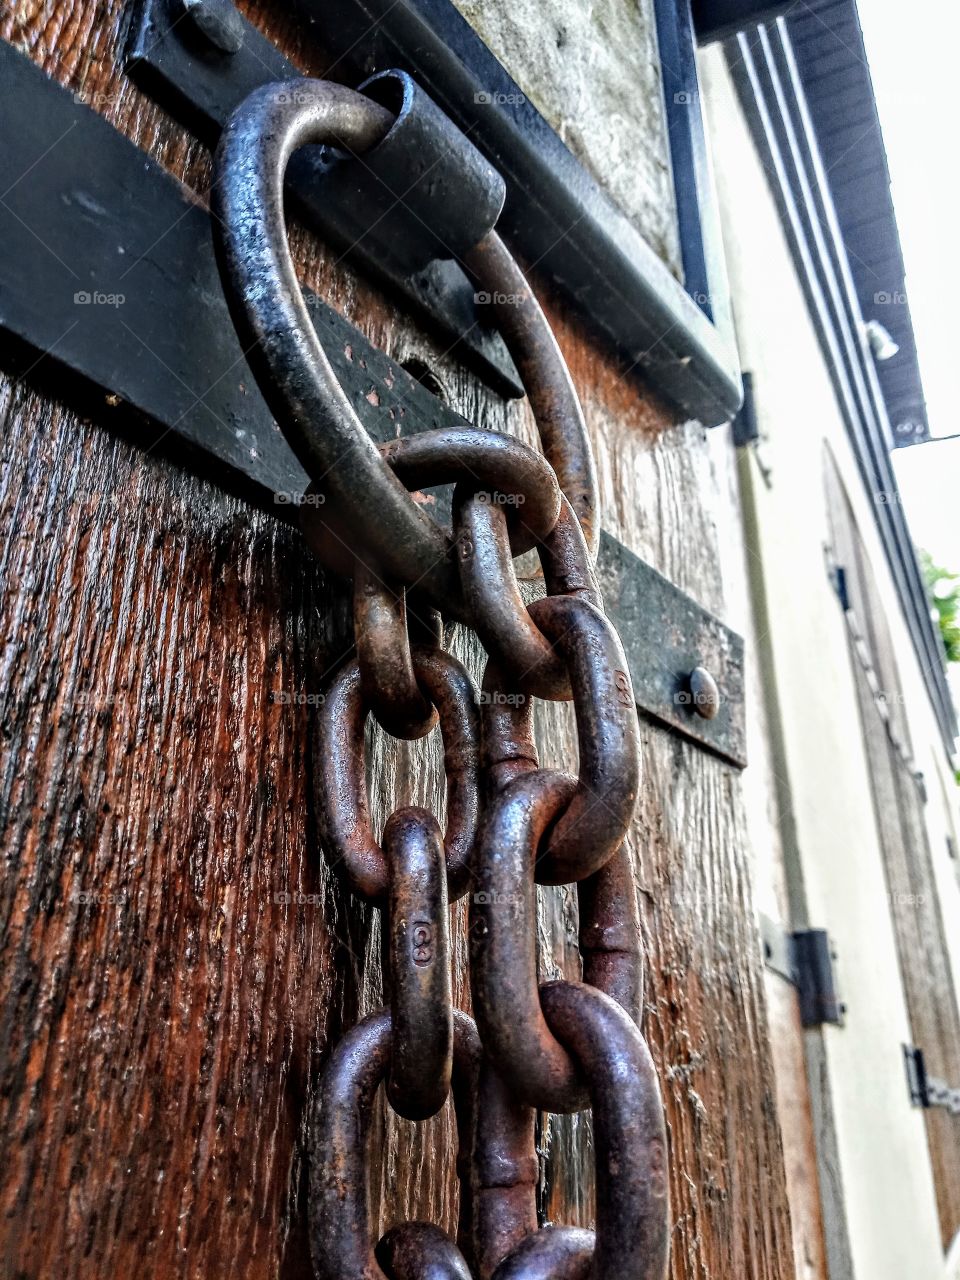 vintage wooden door and chain